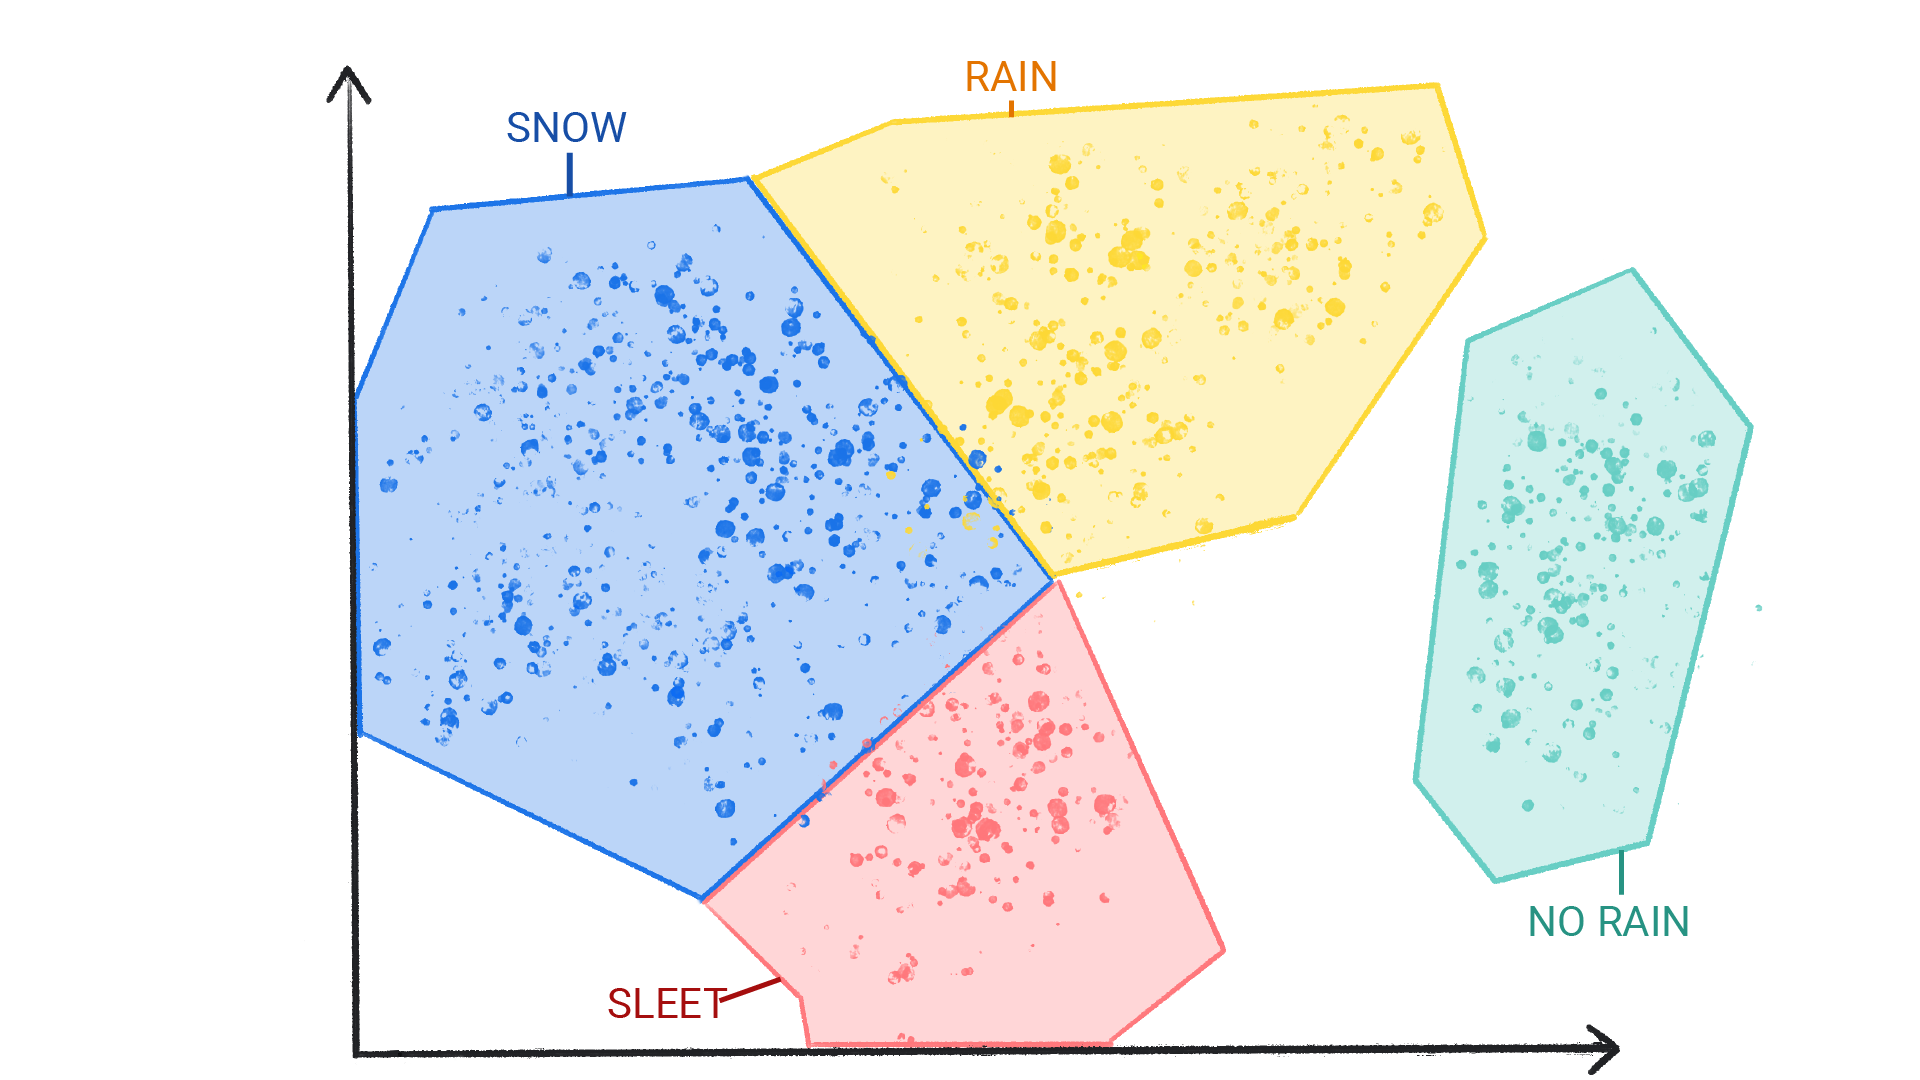 صورة تعرض نقاطًا ملونة في مجموعات عنقودية مُصنّفة على أنها ثلج ومطر وبرَد وبدون مطر، وهي مُحاطة بشكل متقارب.